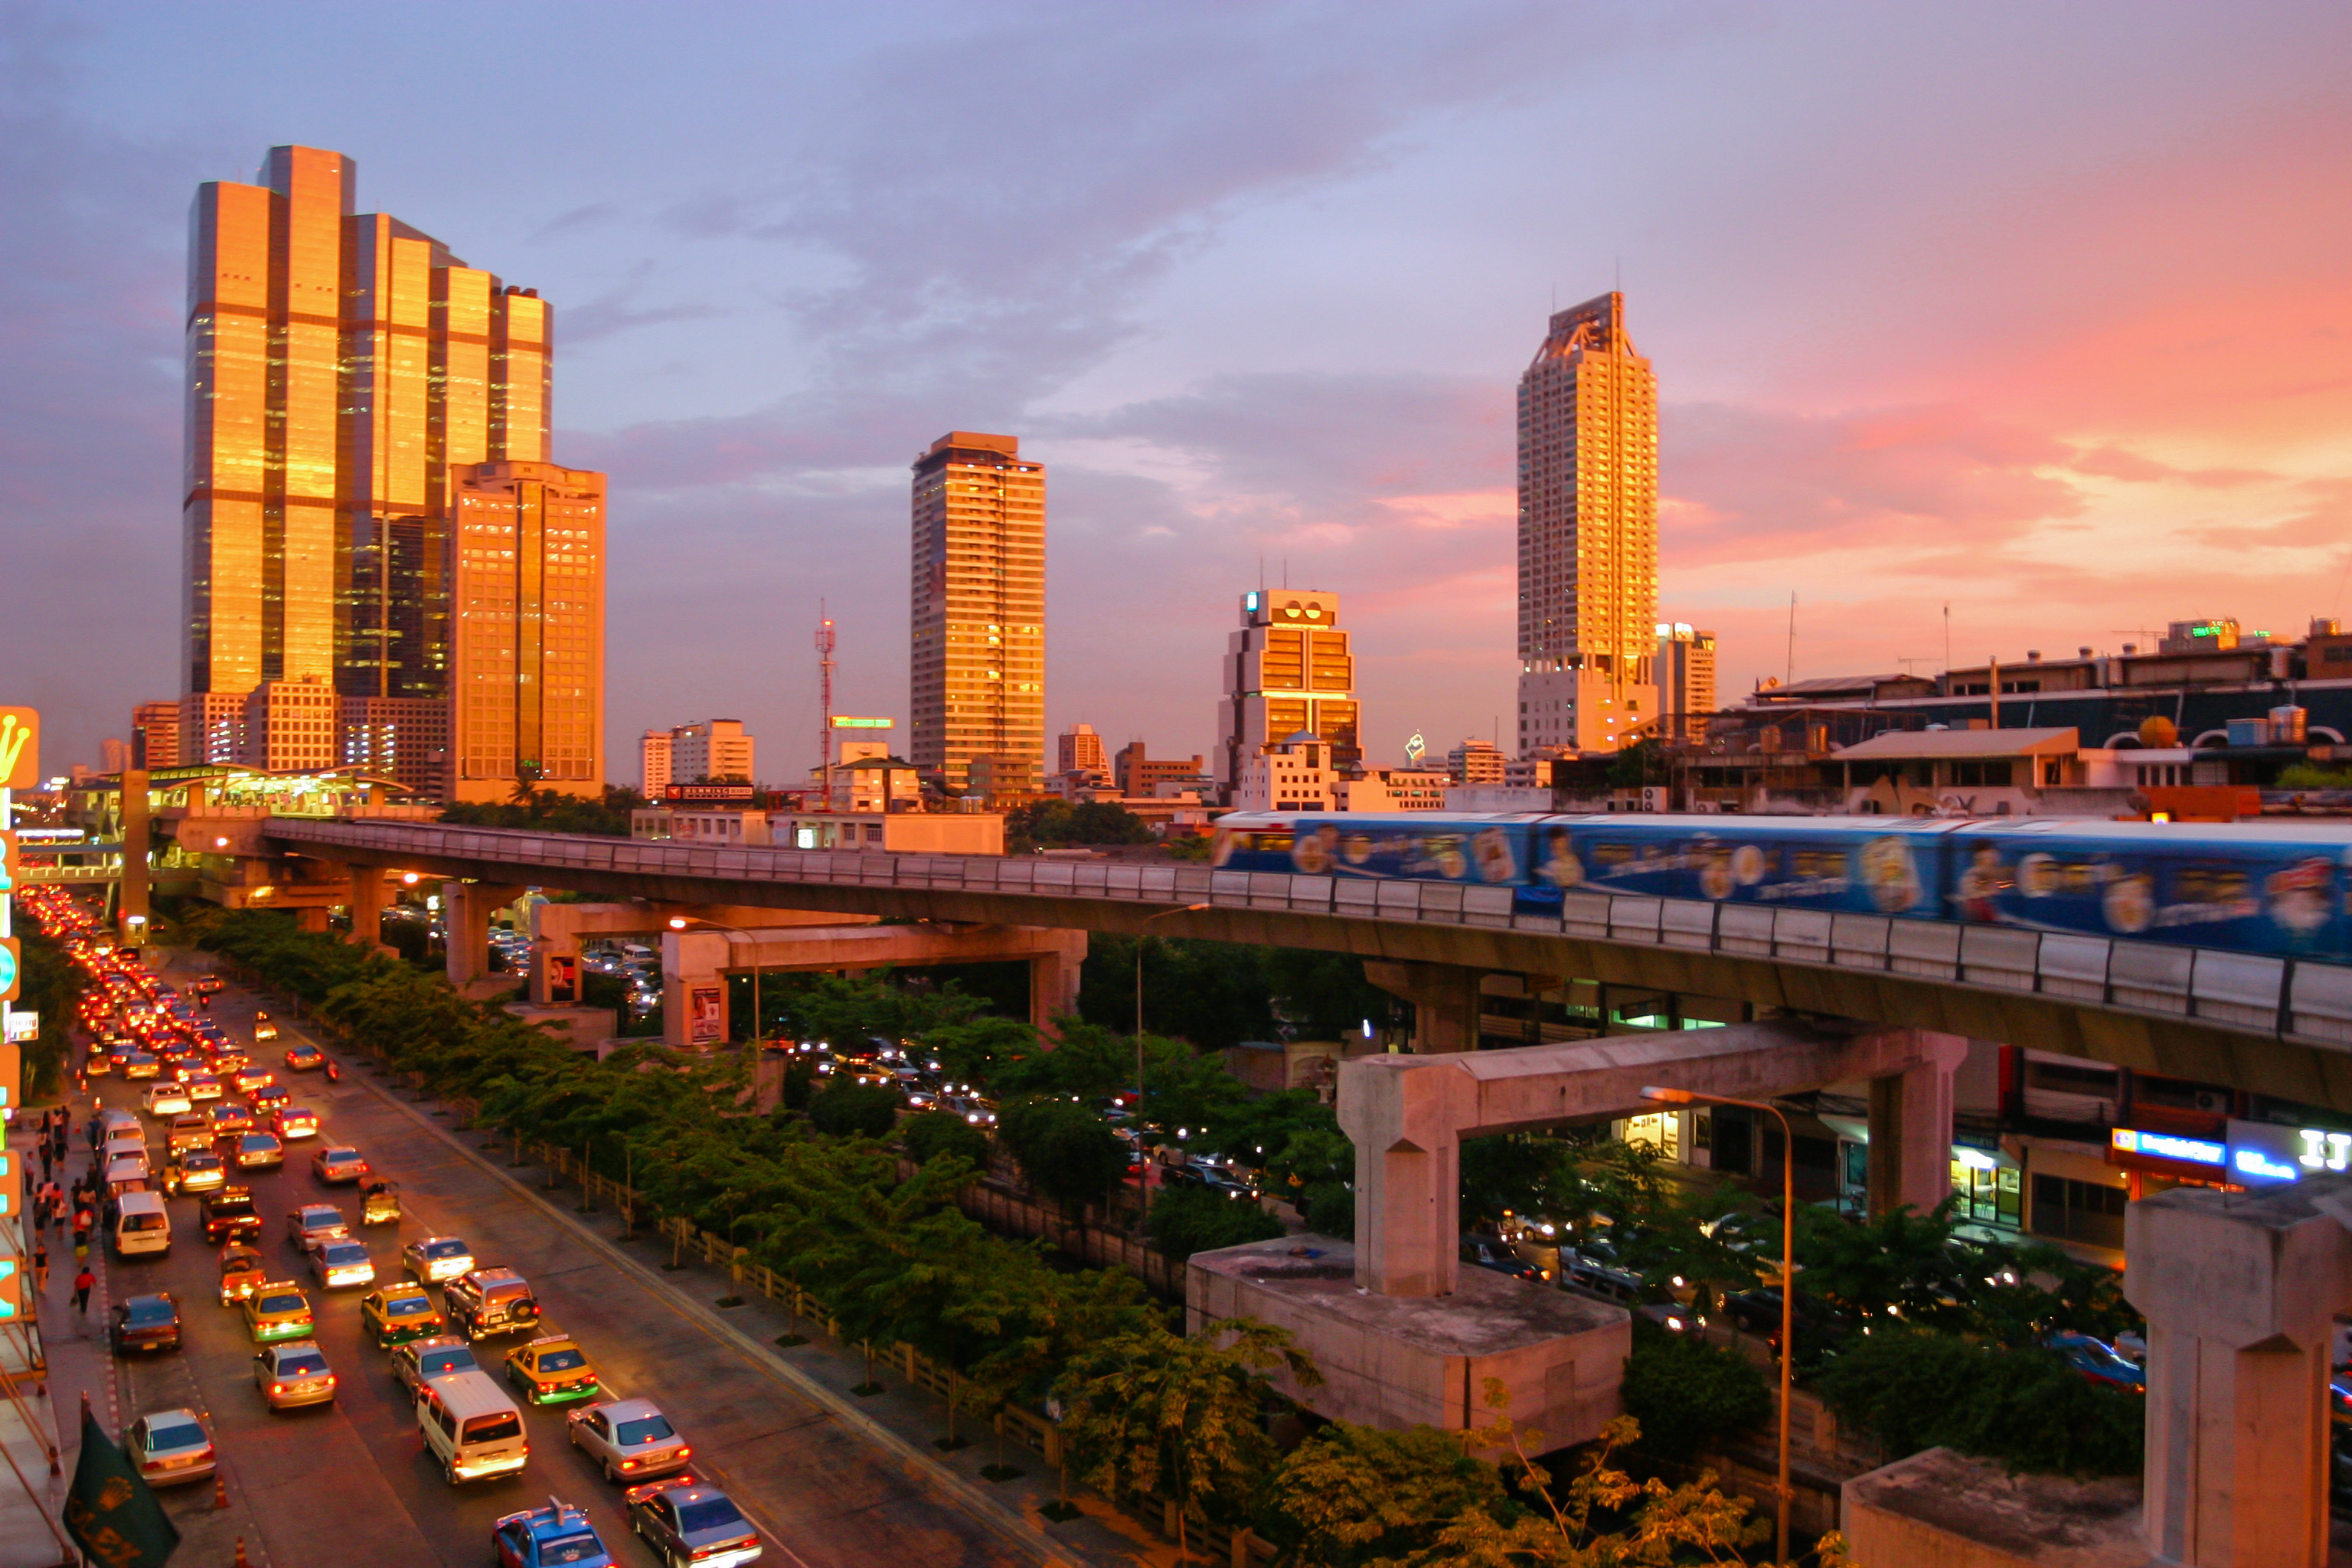 Bangkok: BTS Skytrain, Infrastructure, Sunset. 3080x2050 HD Wallpaper.